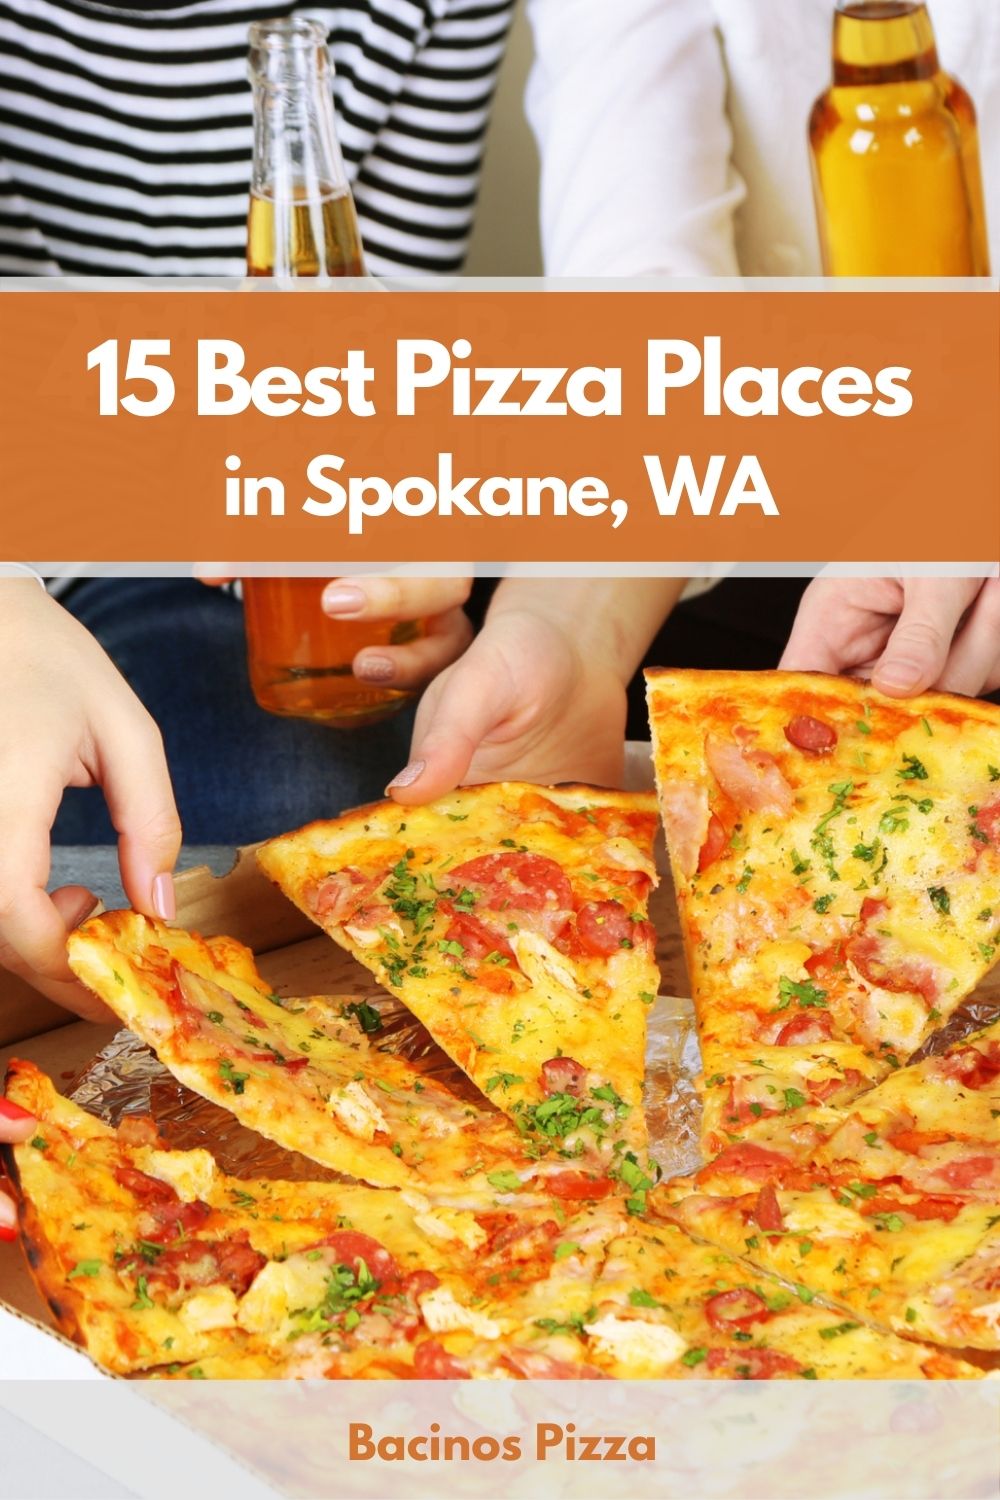 15 Best Pizza Places in Spokane, WA pin 2